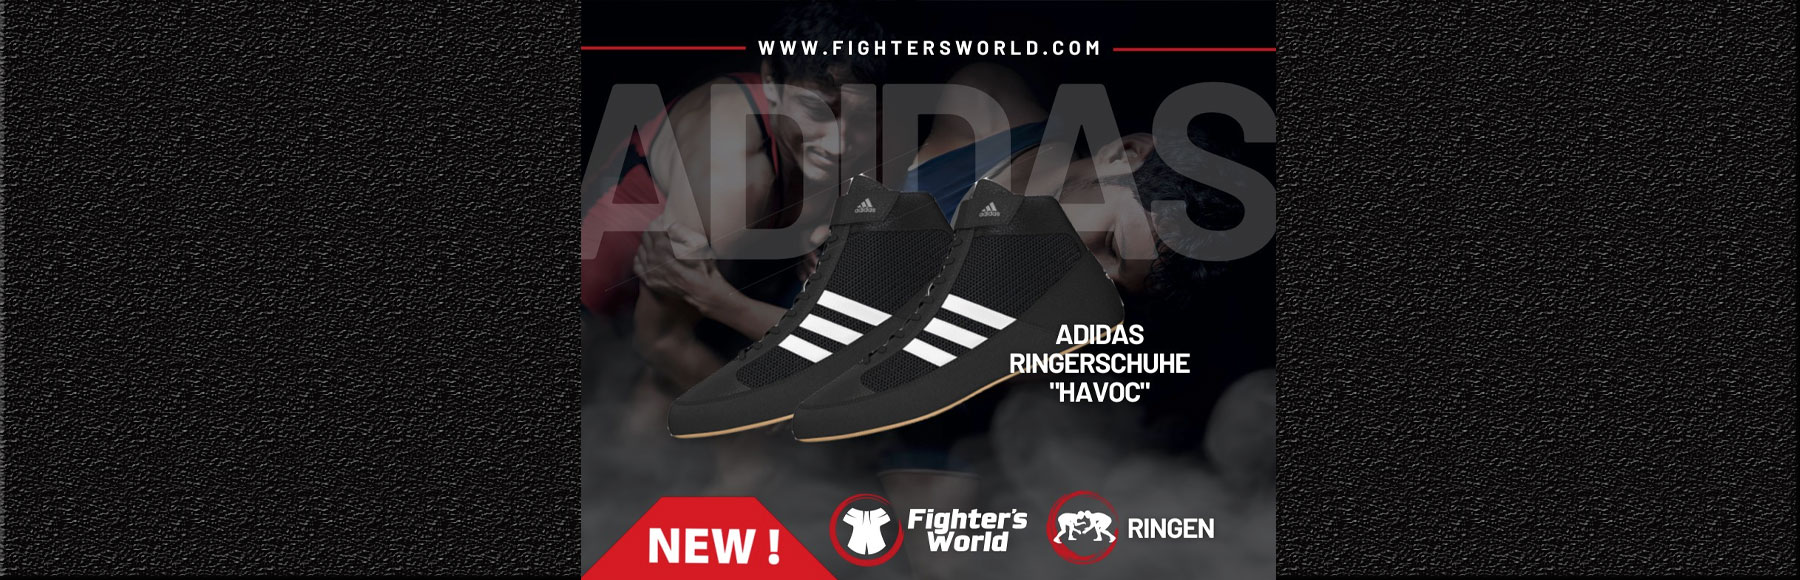 adidas Havoc Ringerschuhe fightersworld